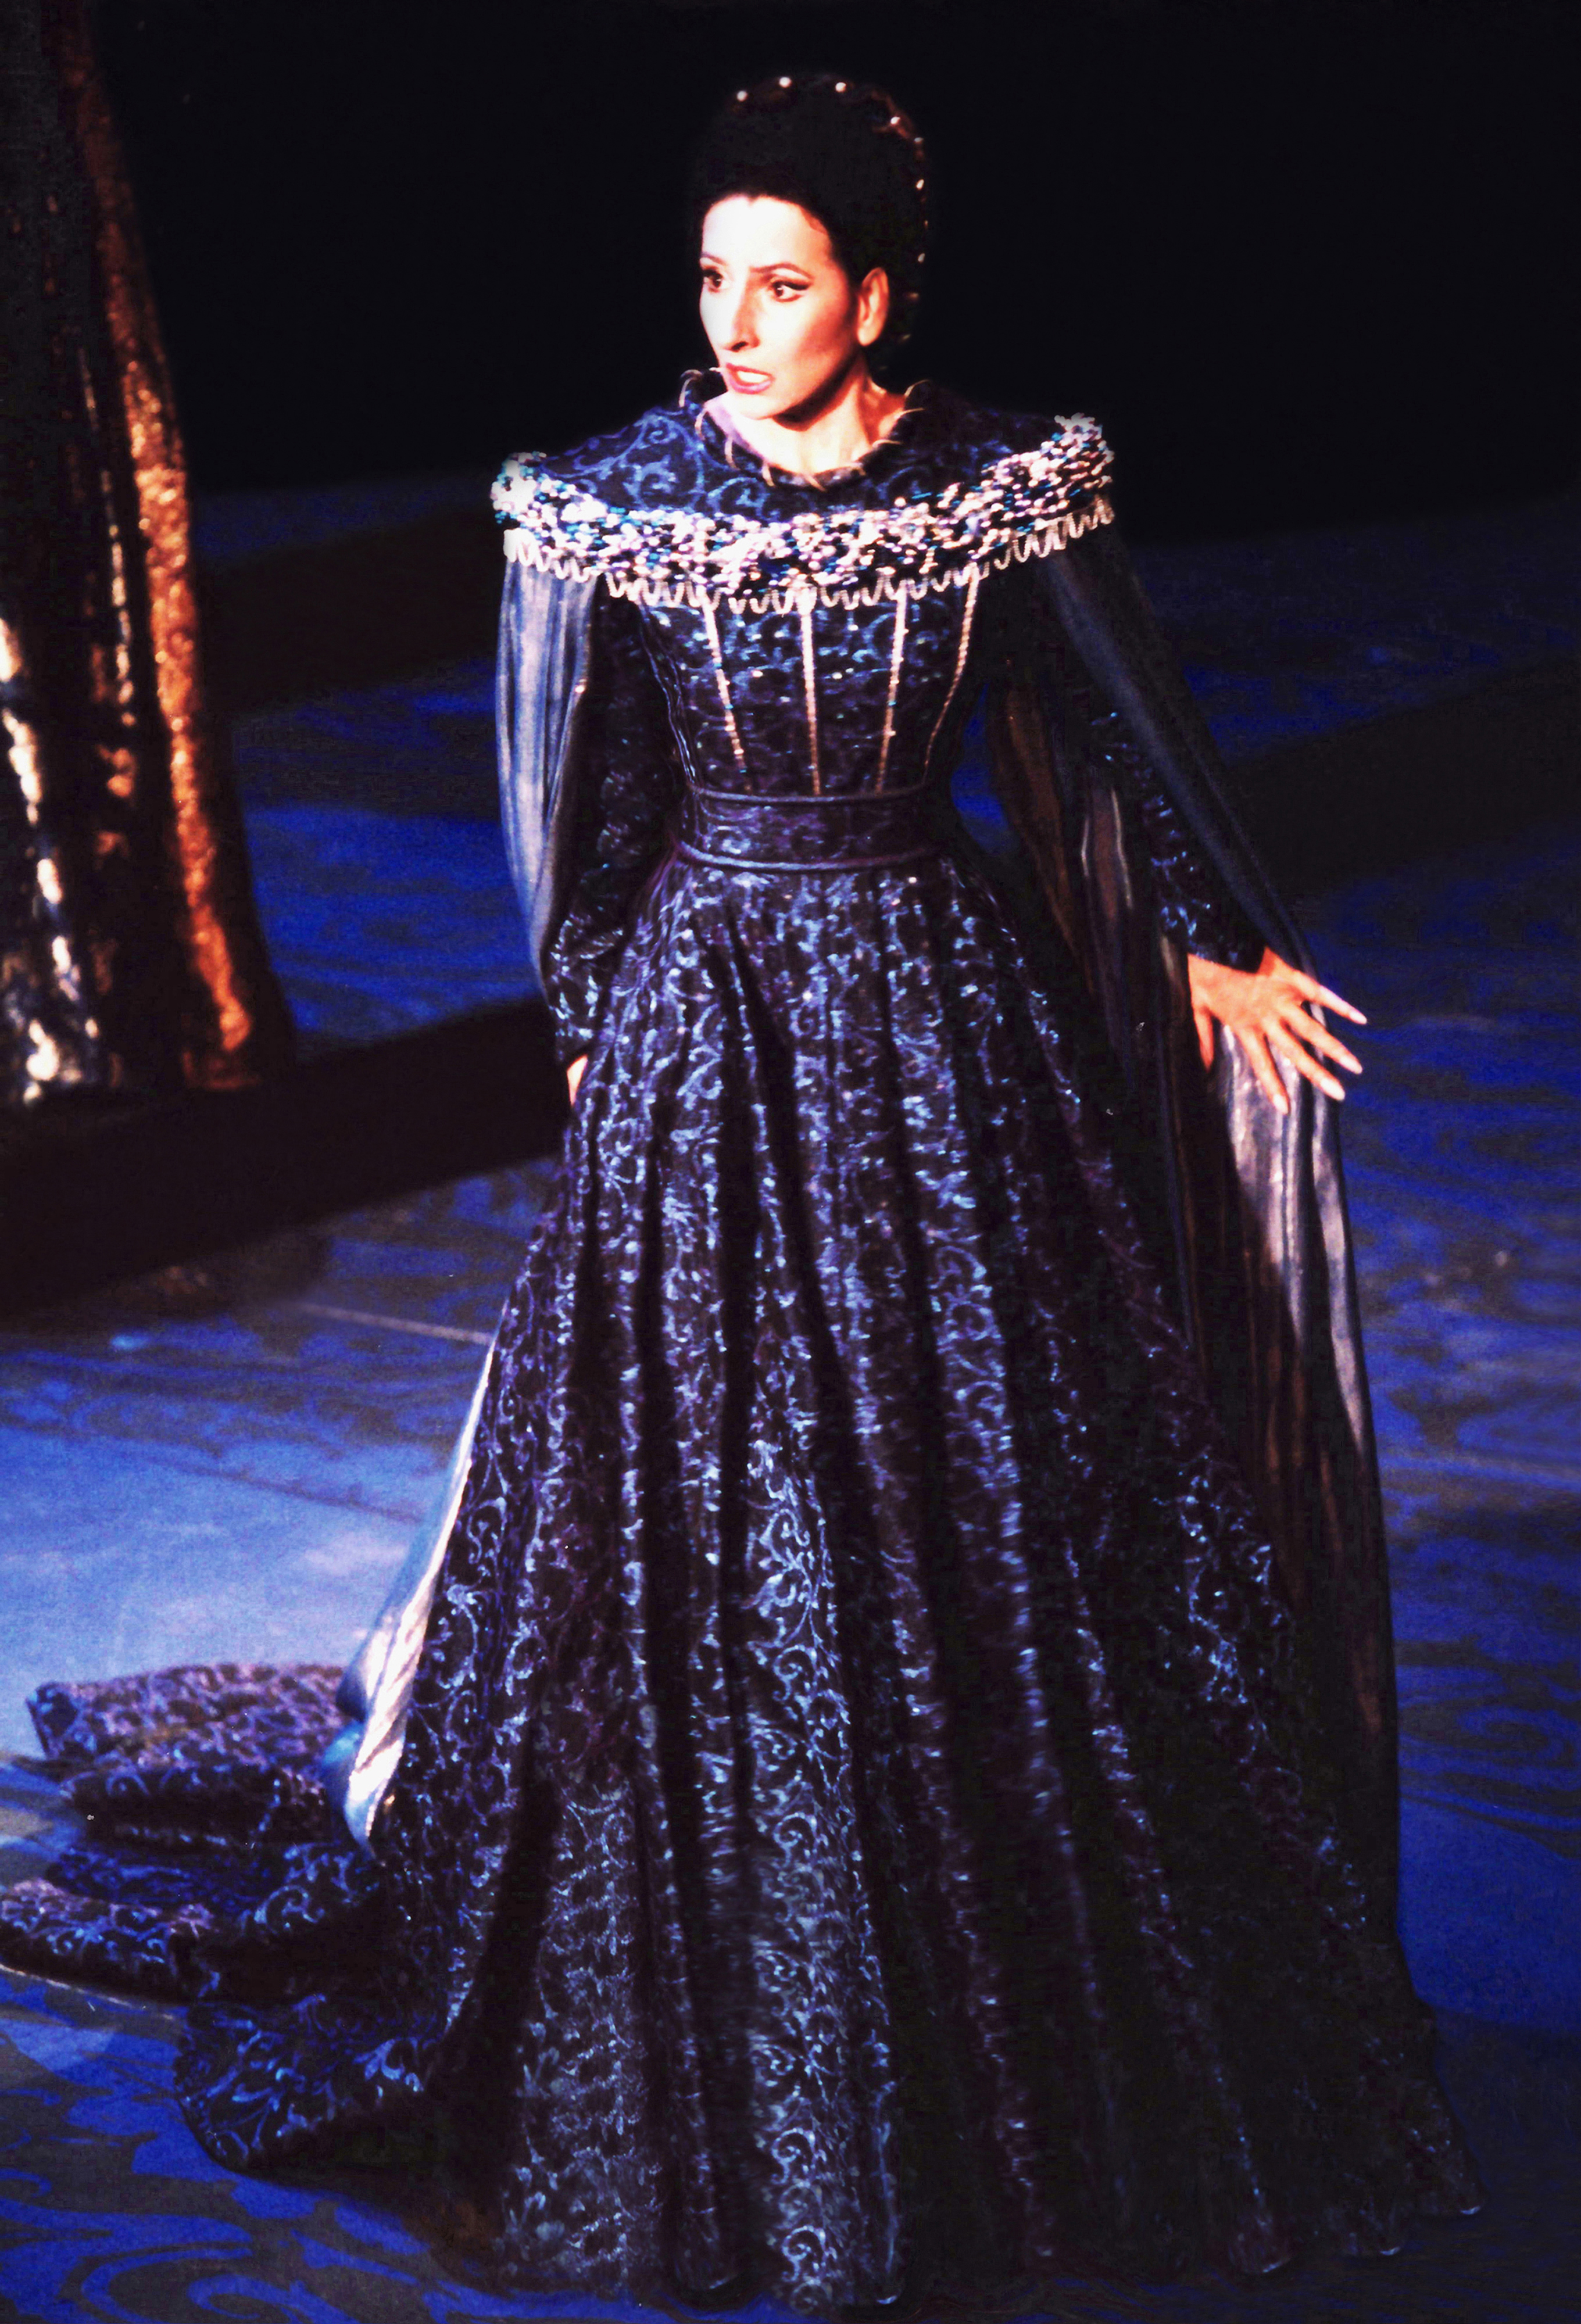 Lucia Aliberti⚘Teatro alla Scala⚘Milan⚘Opera⚘"Beatrice di Tenda"⚘On Stage⚘:http://www.luciaaliberti.it #luciaaliberti #teatroallascala #milan #beatriceditenda #opera #onstage